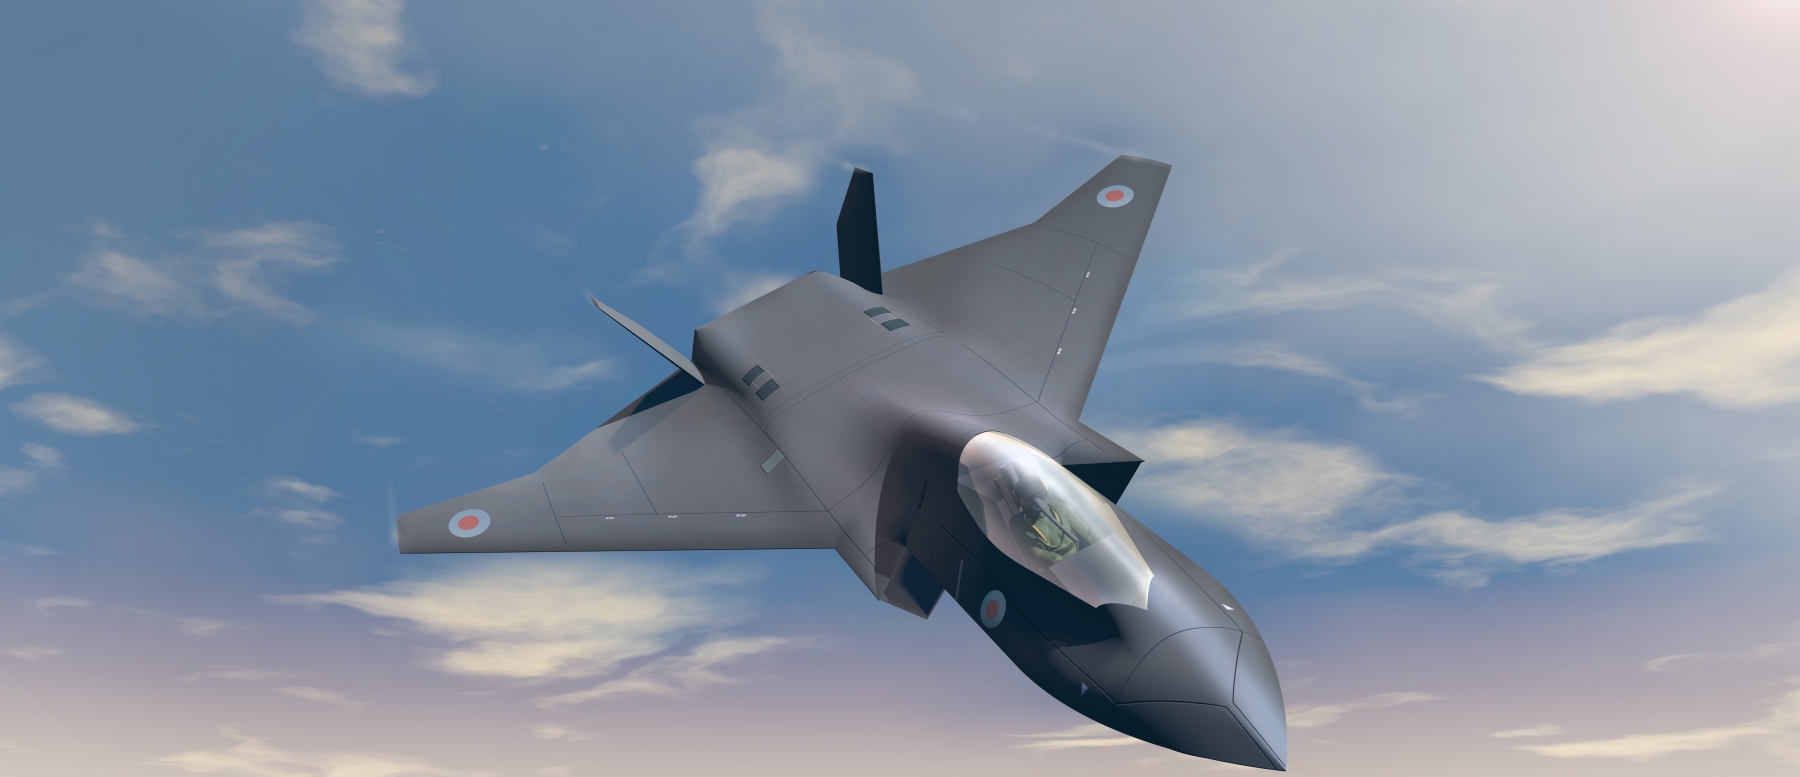 En juillet dernier, BEA Systems avait déjà présenté ce concept sur le Tempest, un prototype d’avion de chasse anglo-italien dévoilé lors du Salon international de l'aéronautique de Farnborough au Royaume-Uni. © BAE Systems